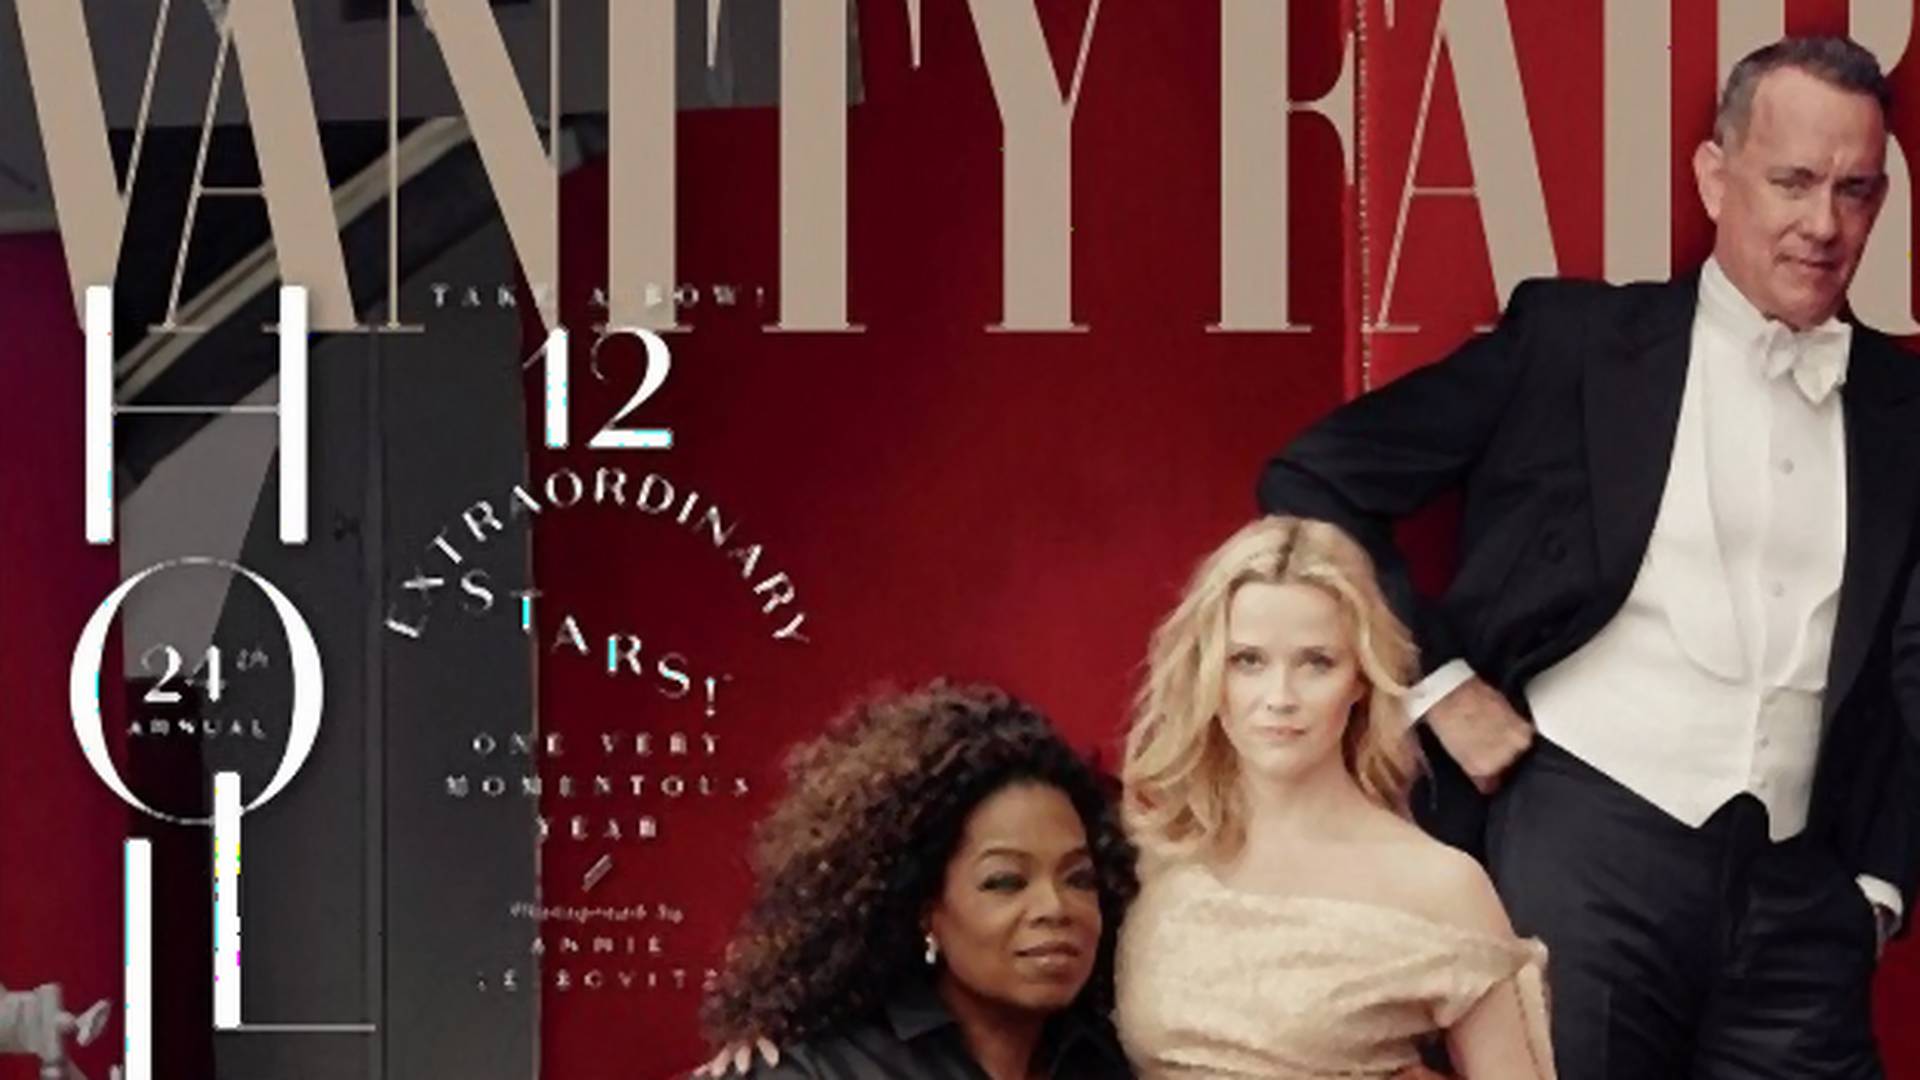 Fotošop debakl: Opra Vinfri ima tri ruke na "Vanity Fair" naslovnici